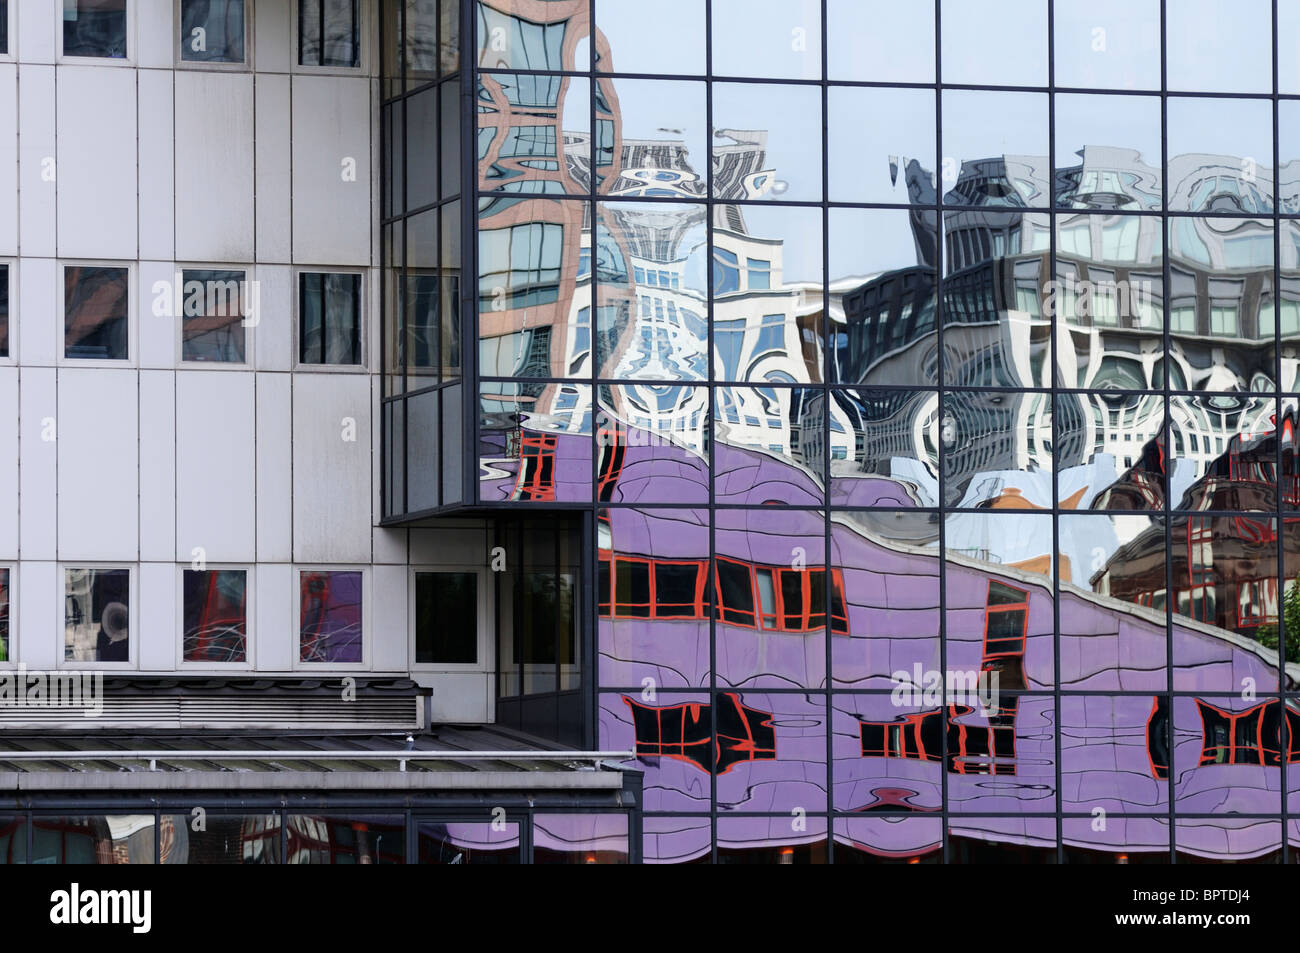 Résumé détail et de réflexion des bâtiments dans la région de Heron Quays de Canary Wharf, les Docklands, London, England, UK Banque D'Images